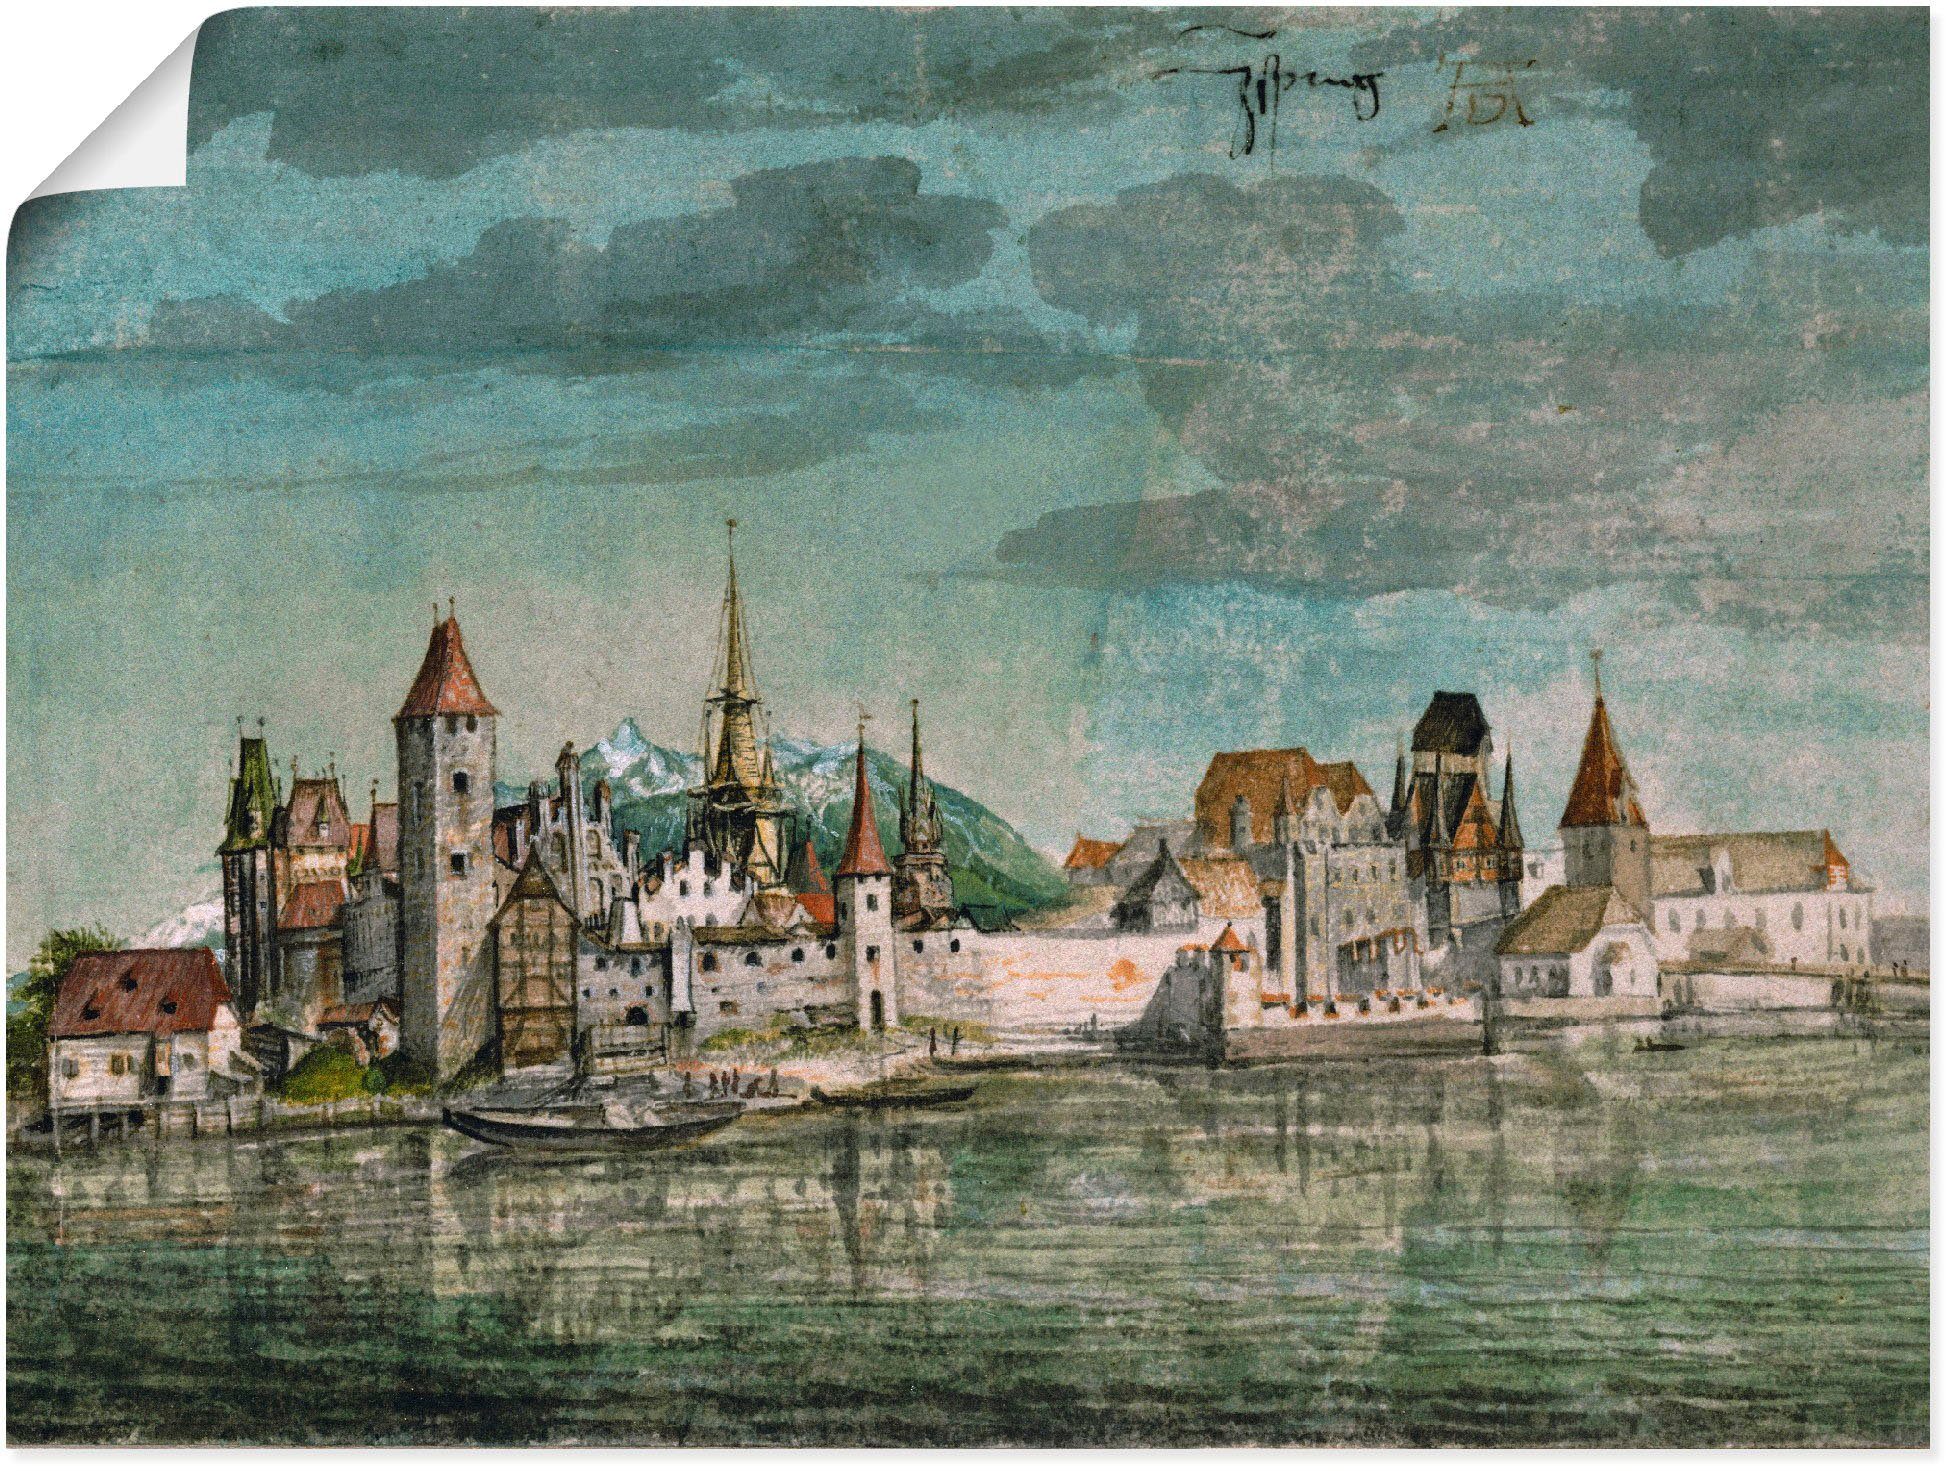 Artland Artprint Innsbruck gezien vanuit het noorden. 1494. in vele afmetingen & productsoorten -artprint op linnen, poster, muursticker / wandfolie ook geschikt voor de badkamer (